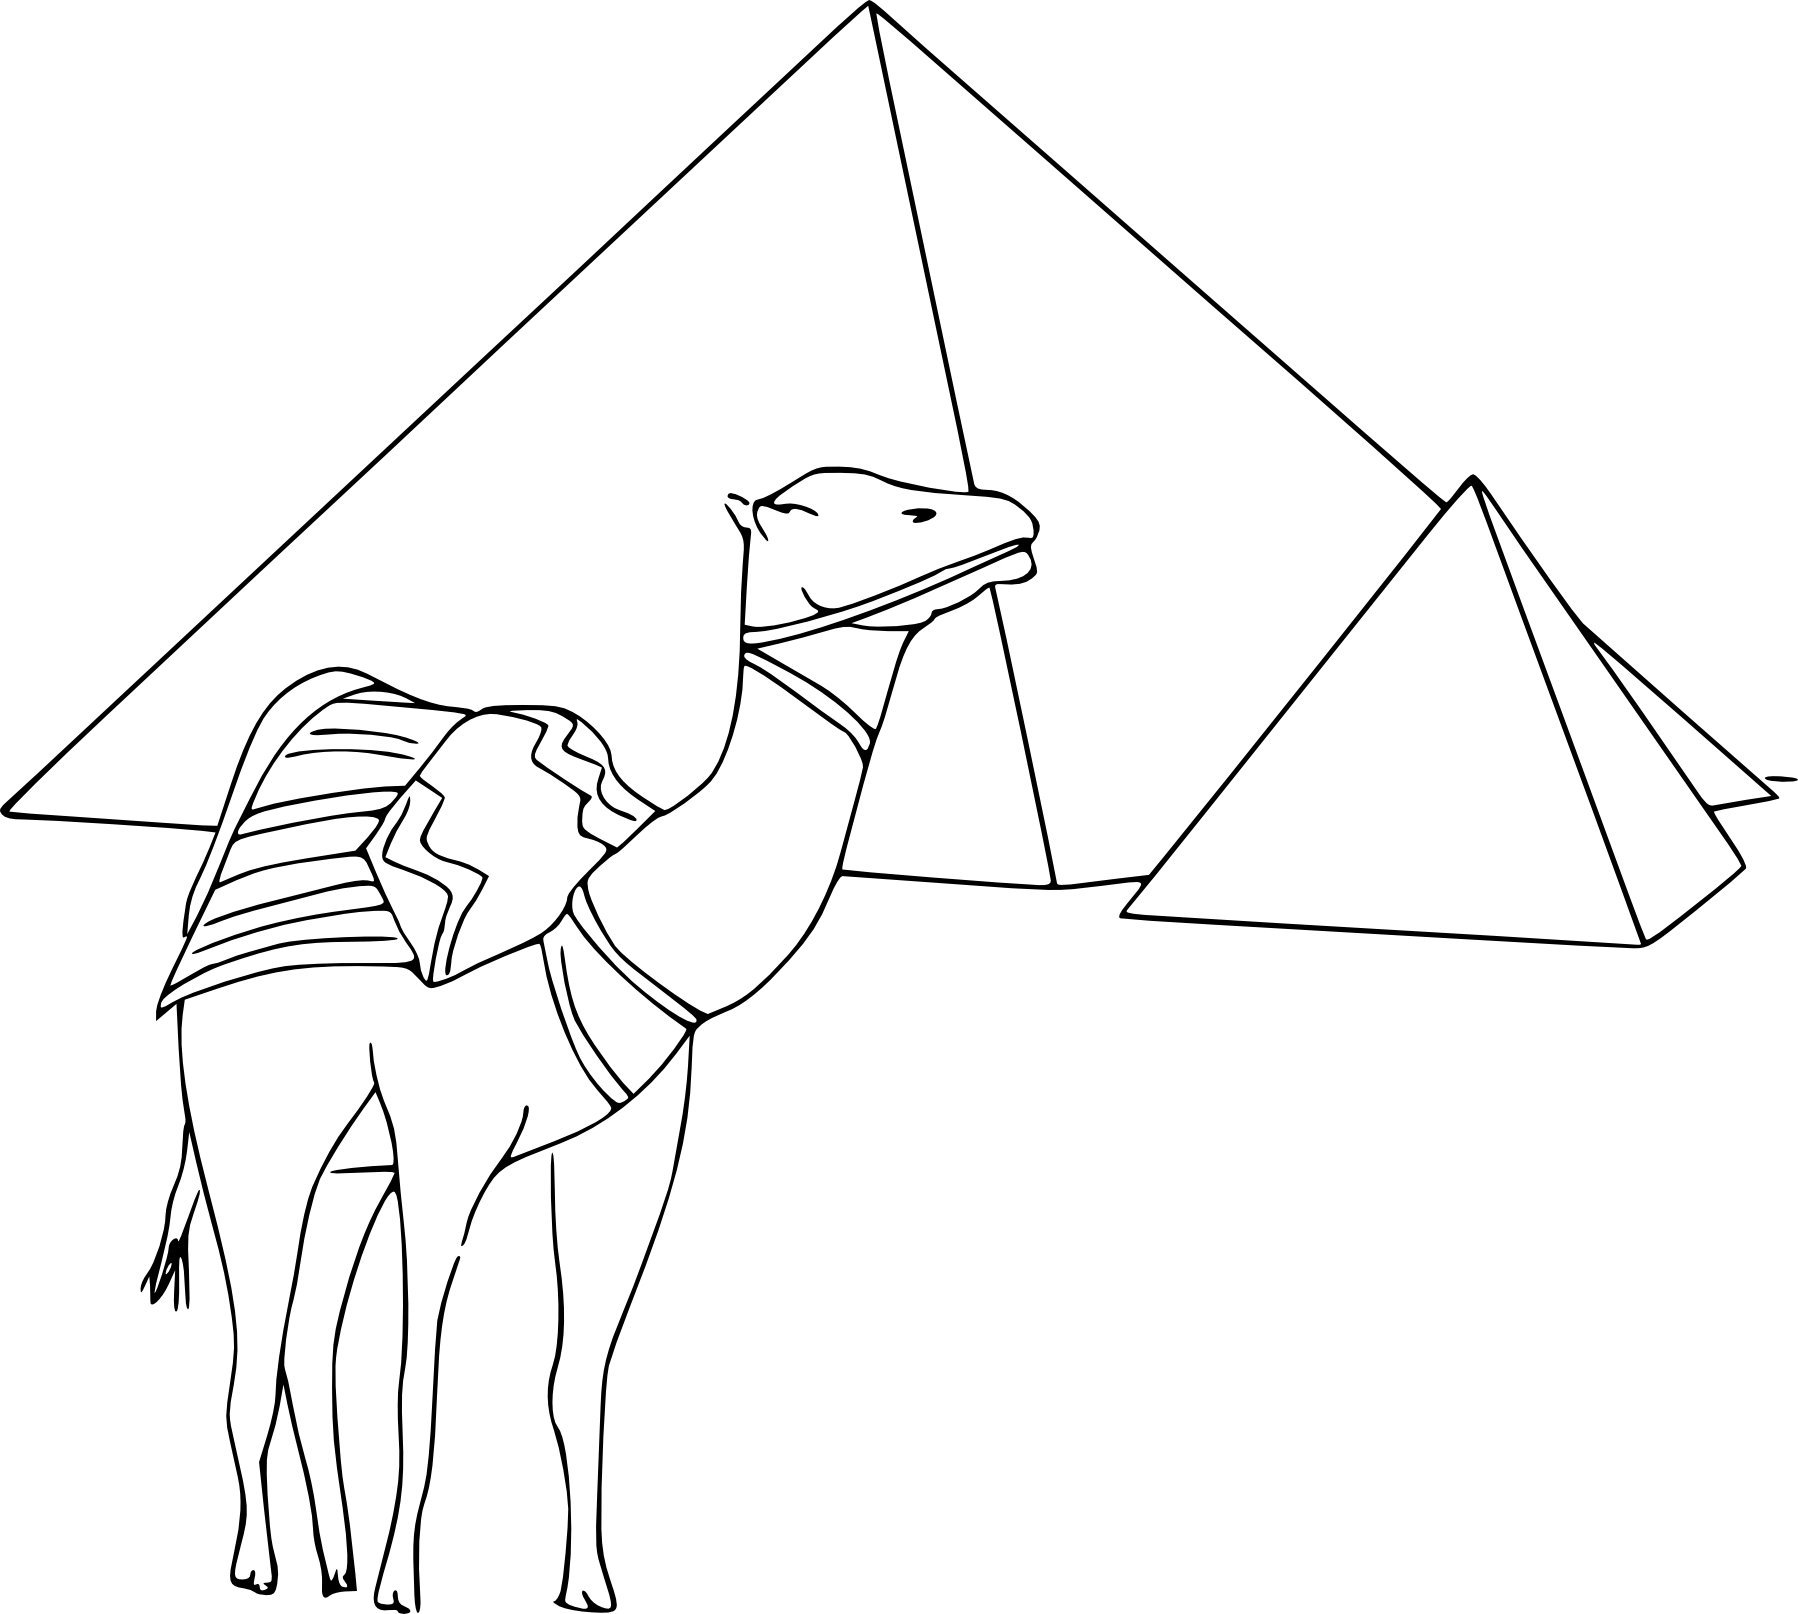 Пирамида Хеопса рисунок карандашом